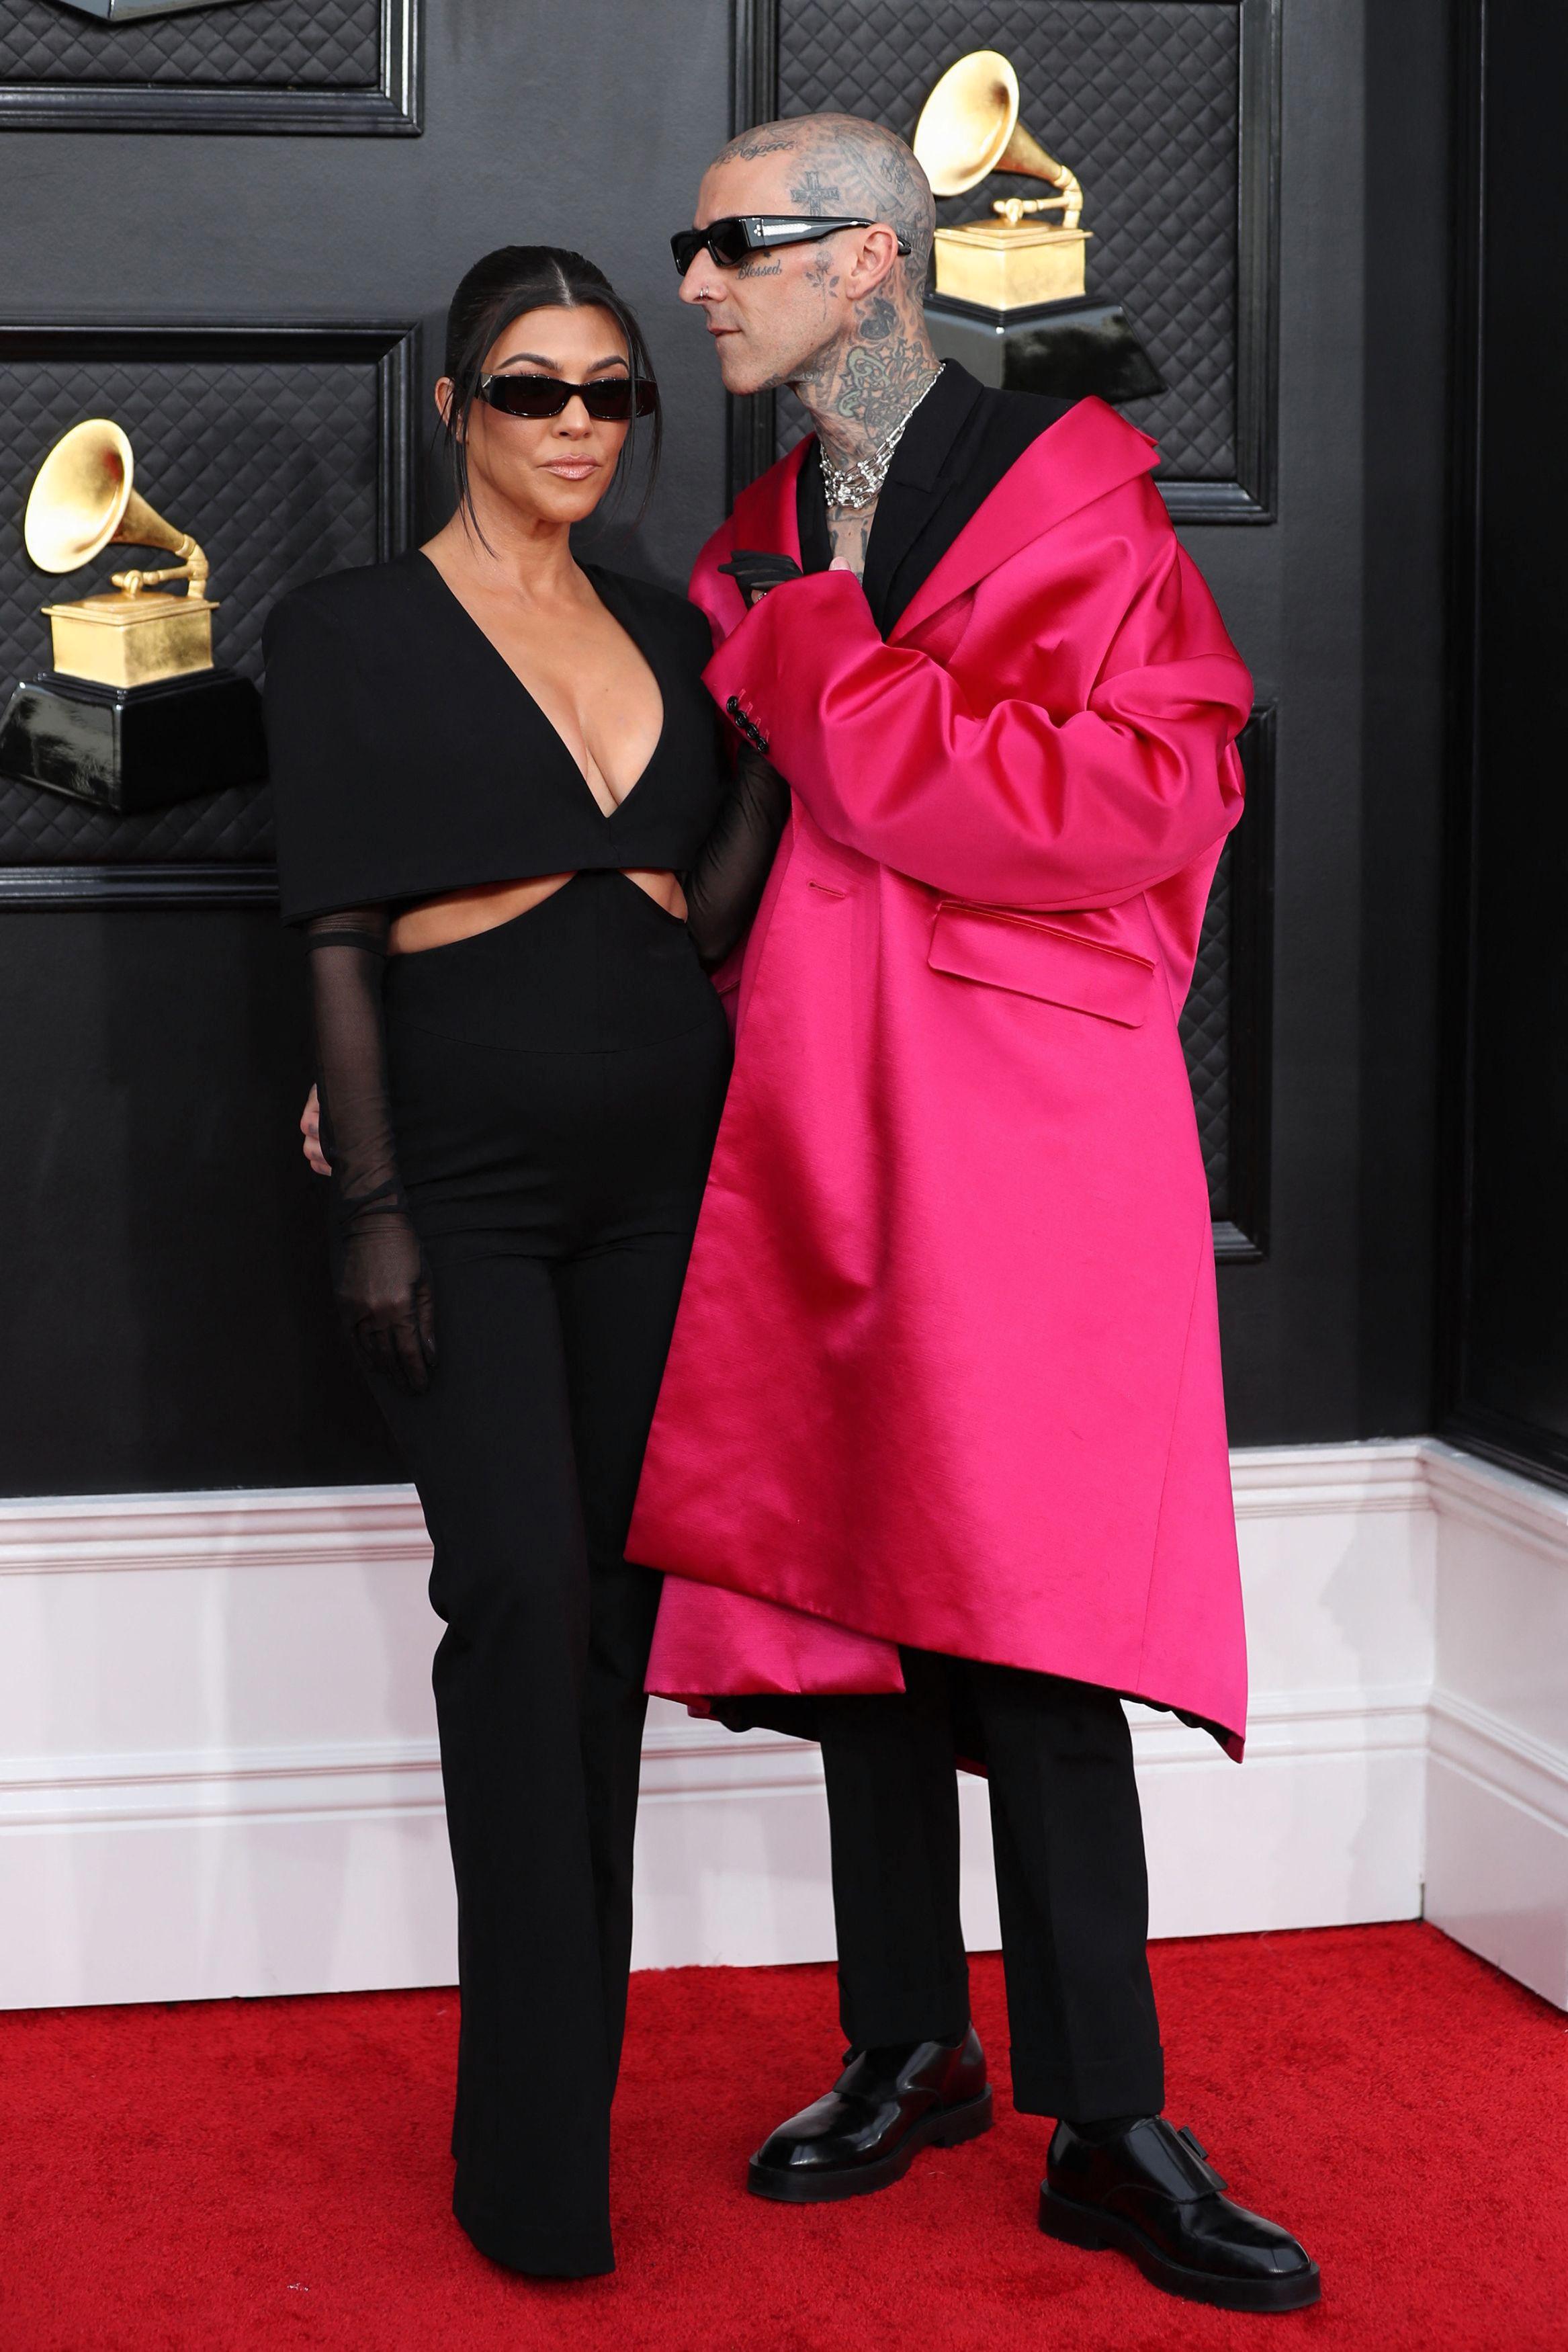 MATCHET: Under den rosa kåpen har Travis Barker på seg en svart vest og bukse, og matchet forloveden Kourtney Kardashian som hadde på seg en jumpsuit fra Et Ochs’ høstkolleksjon. Barkers antrekk er signert Givenchy.